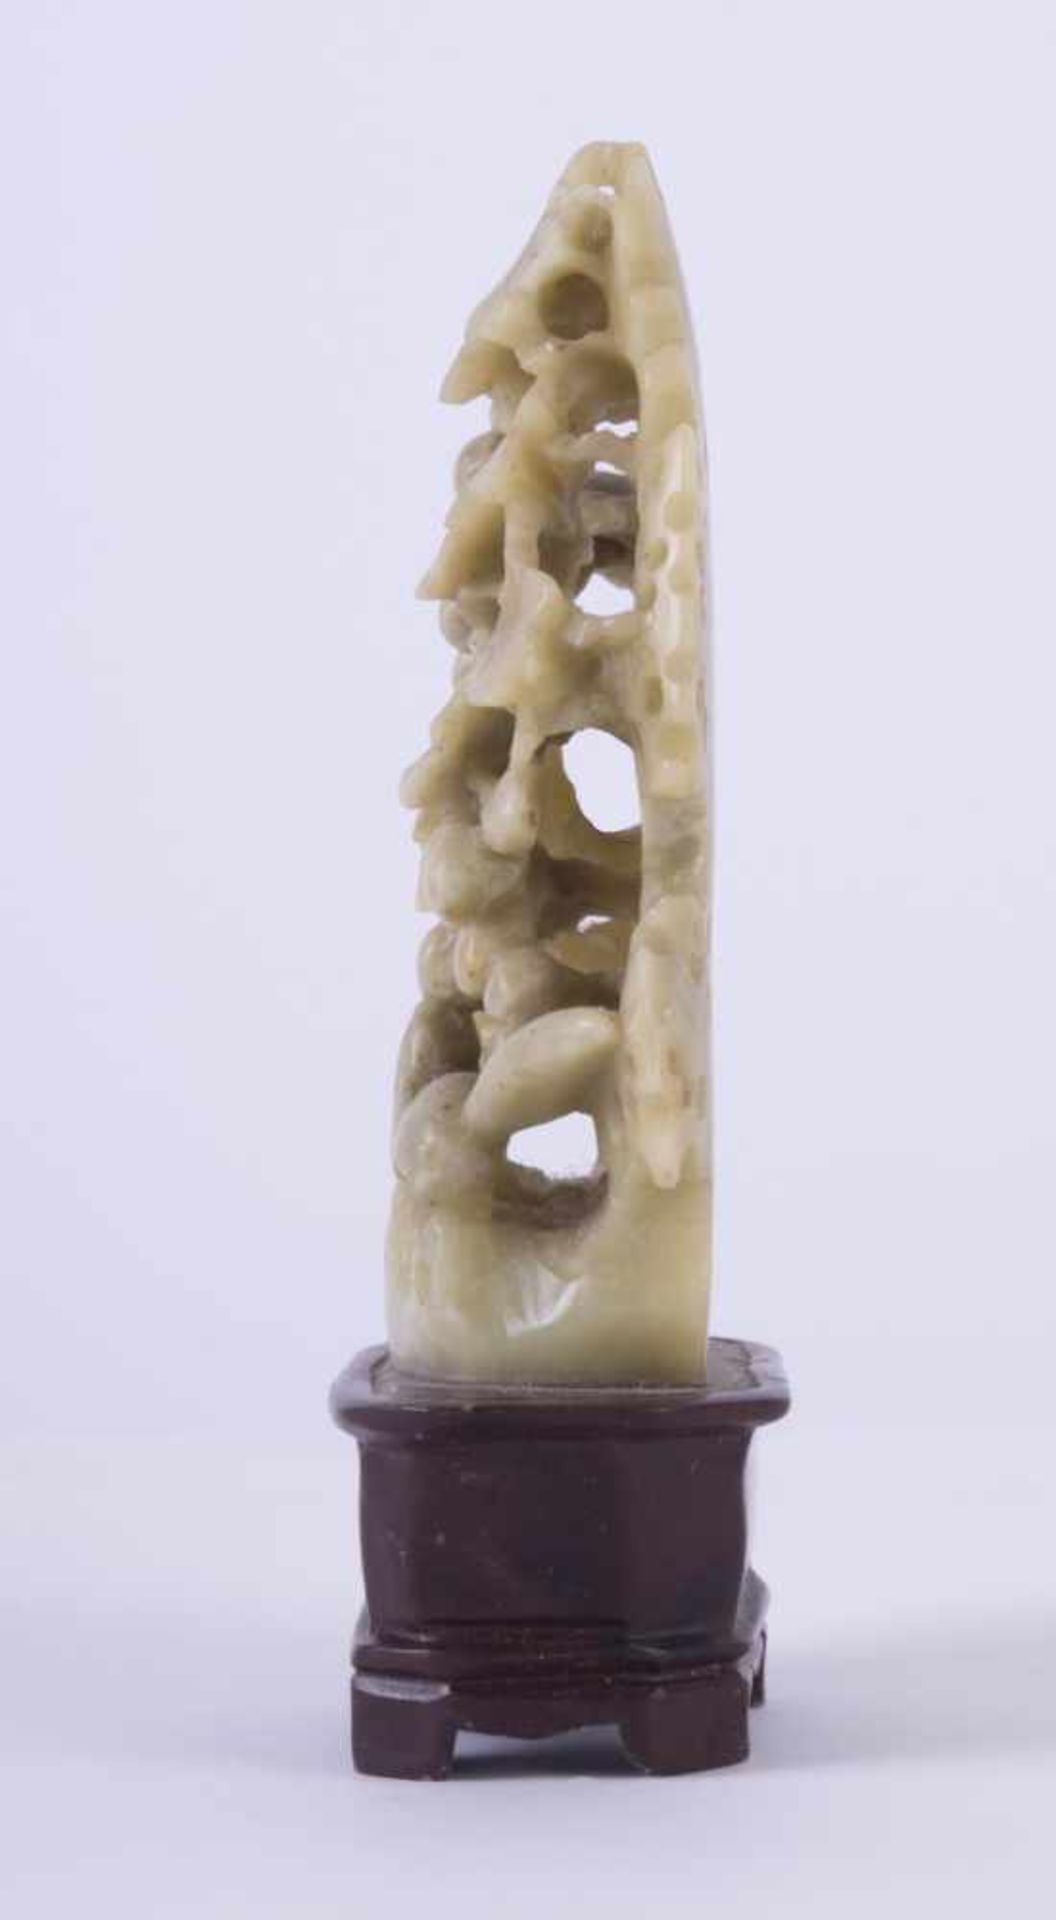 Speckstein-Schnitzerei China 19. Jhd.feine detailgetreue Schnitzerei, H: 12 cmSoapstone carving - Bild 2 aus 3